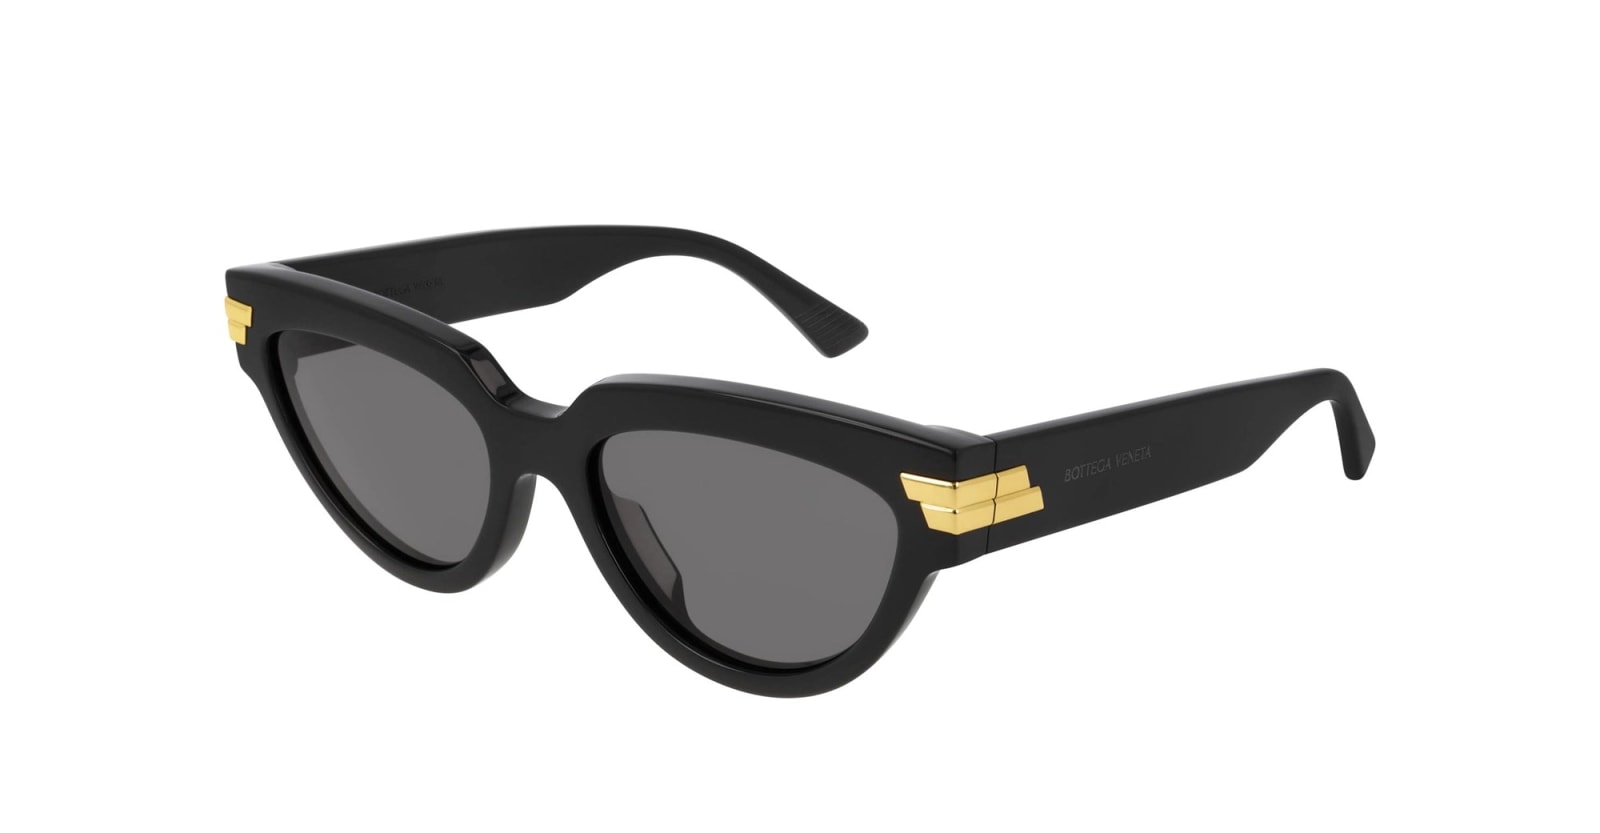 Bottega Veneta Eyewear Bv1035s-001 - Black Sunglasses